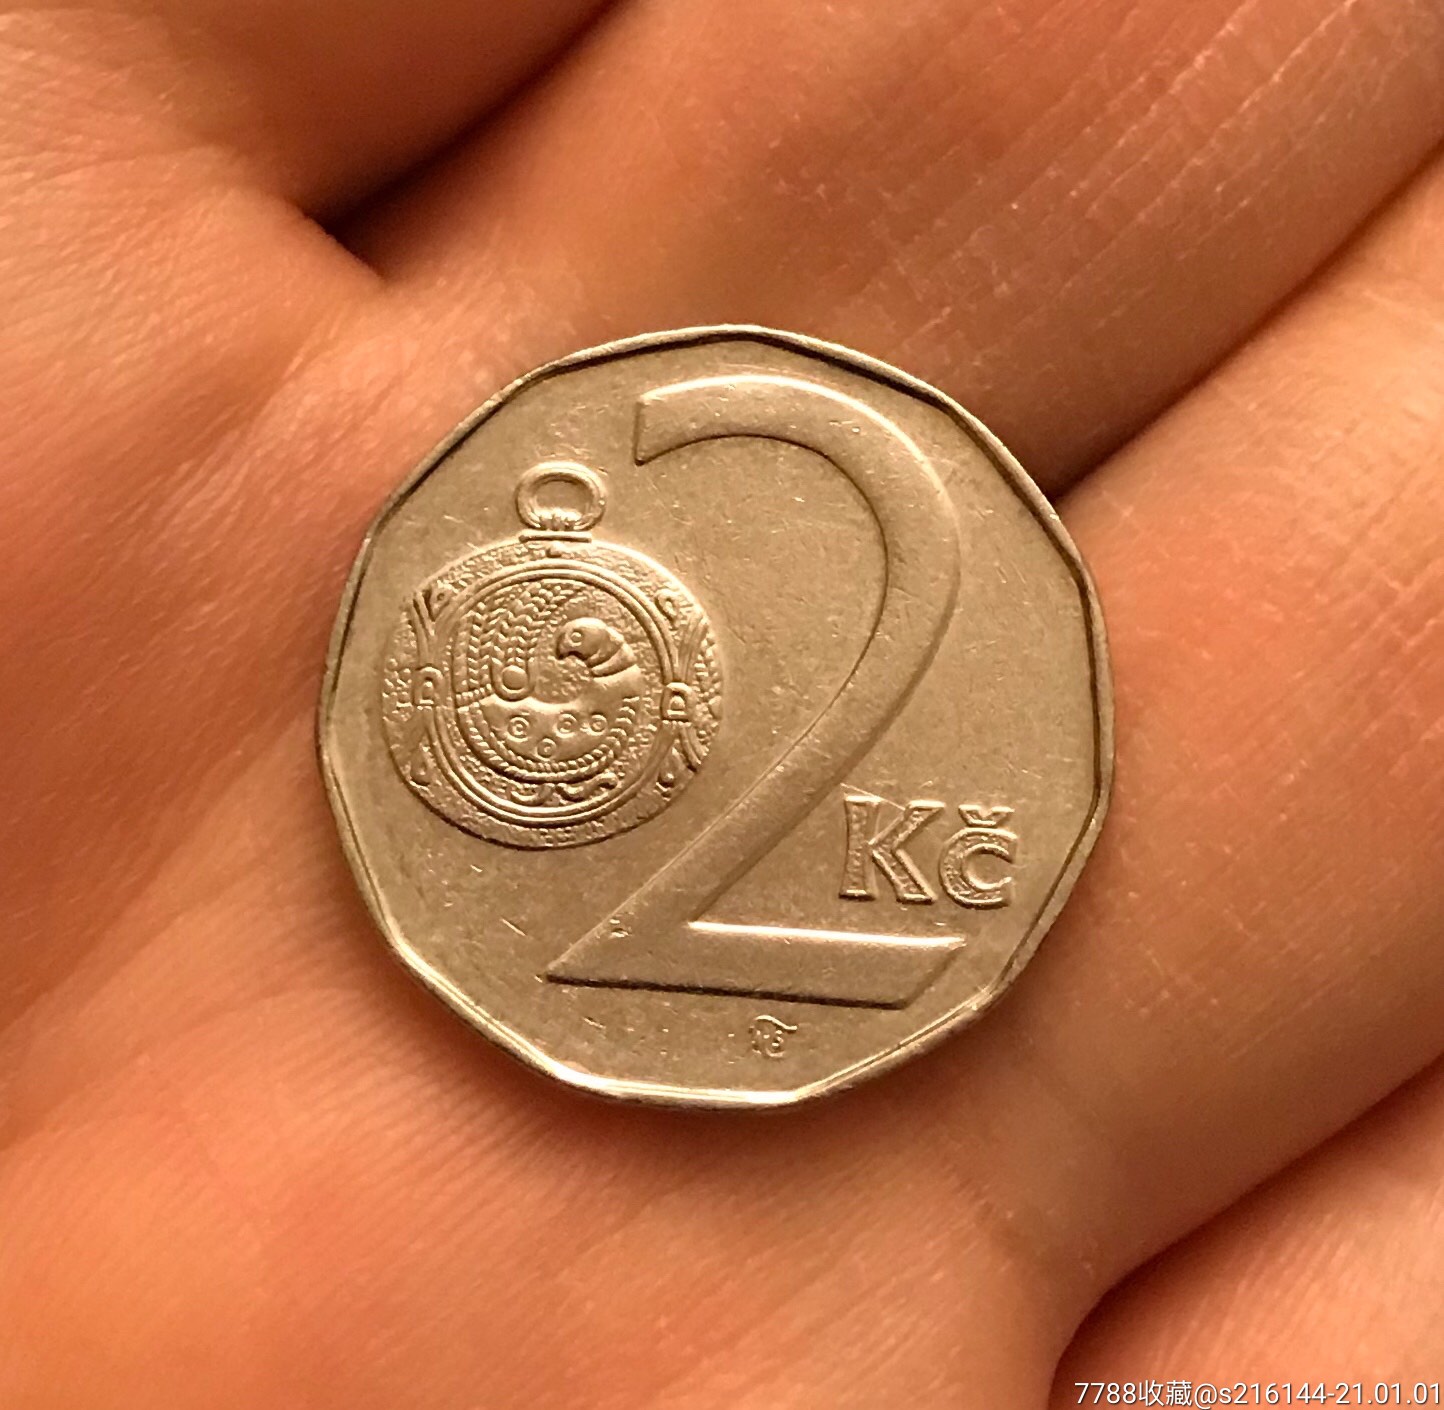 捷克克朗硬币图片